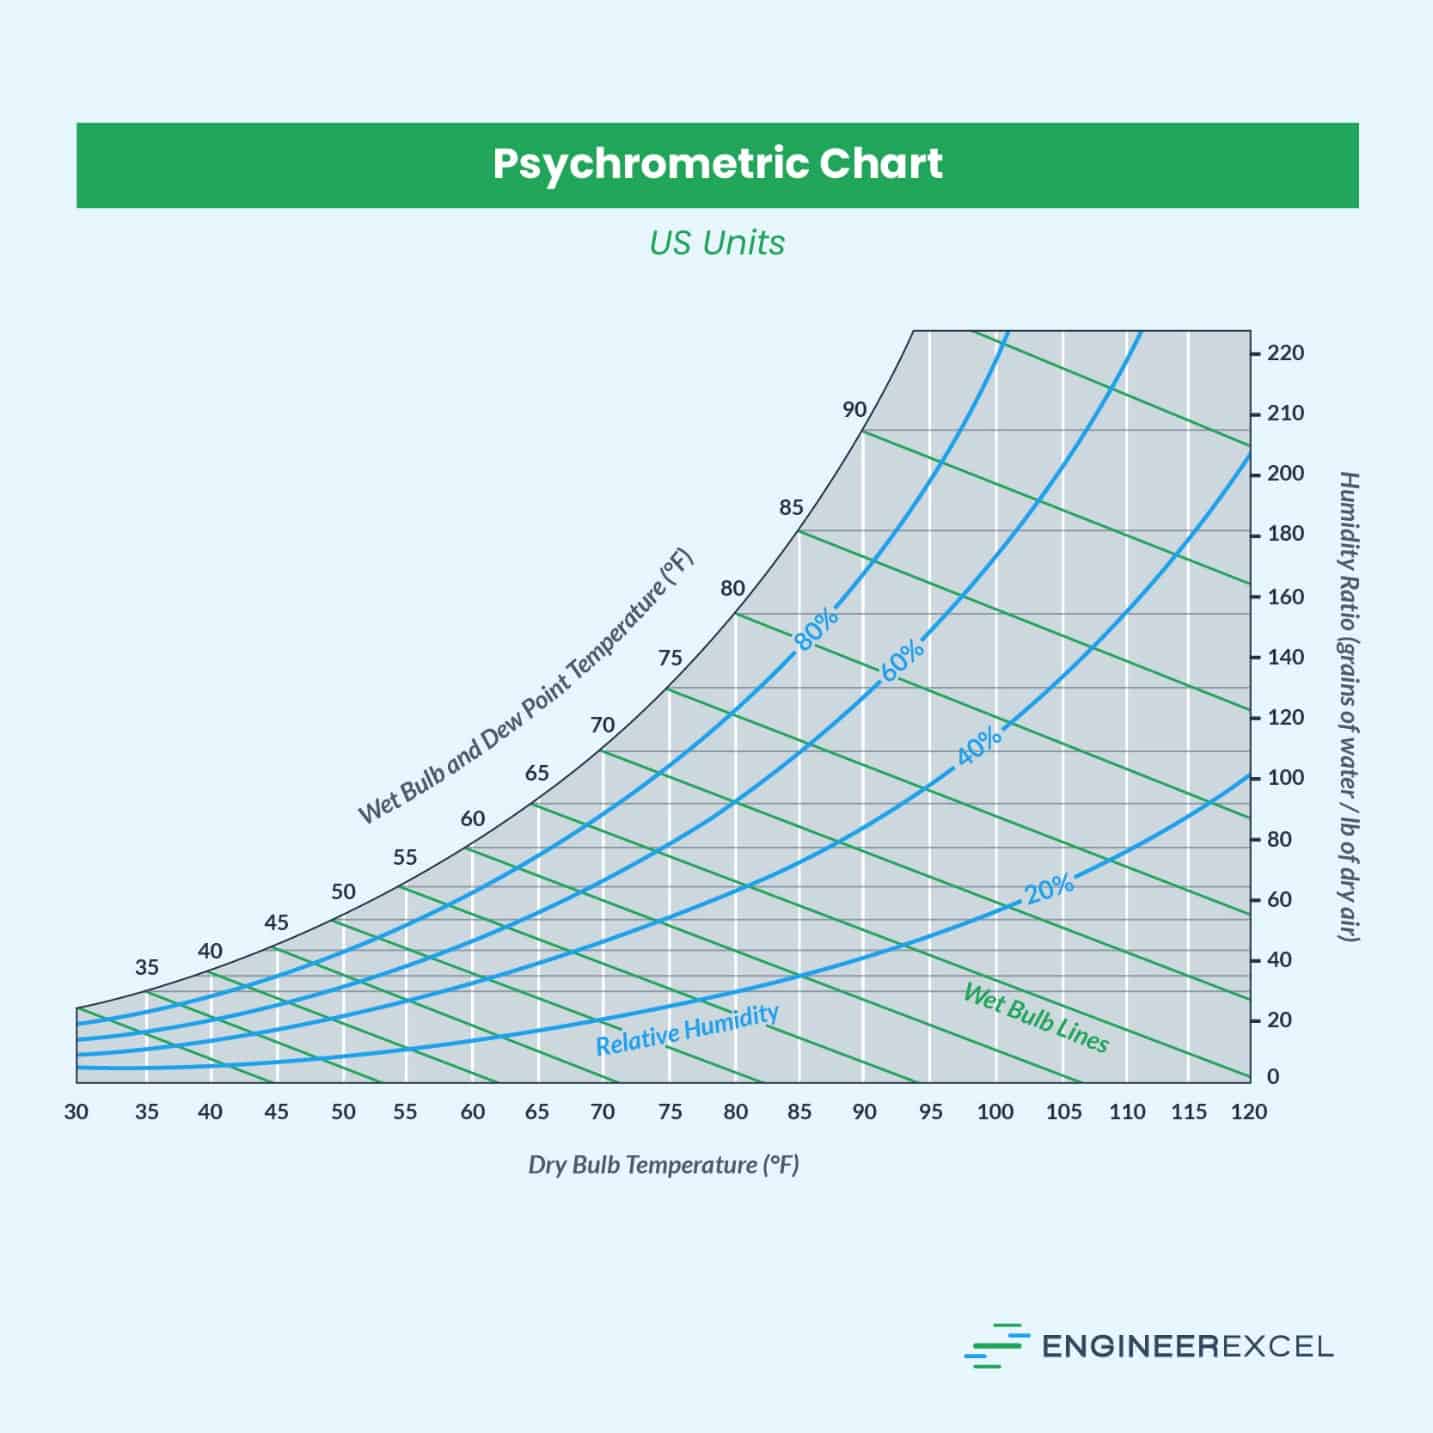 psychrometric chart US units